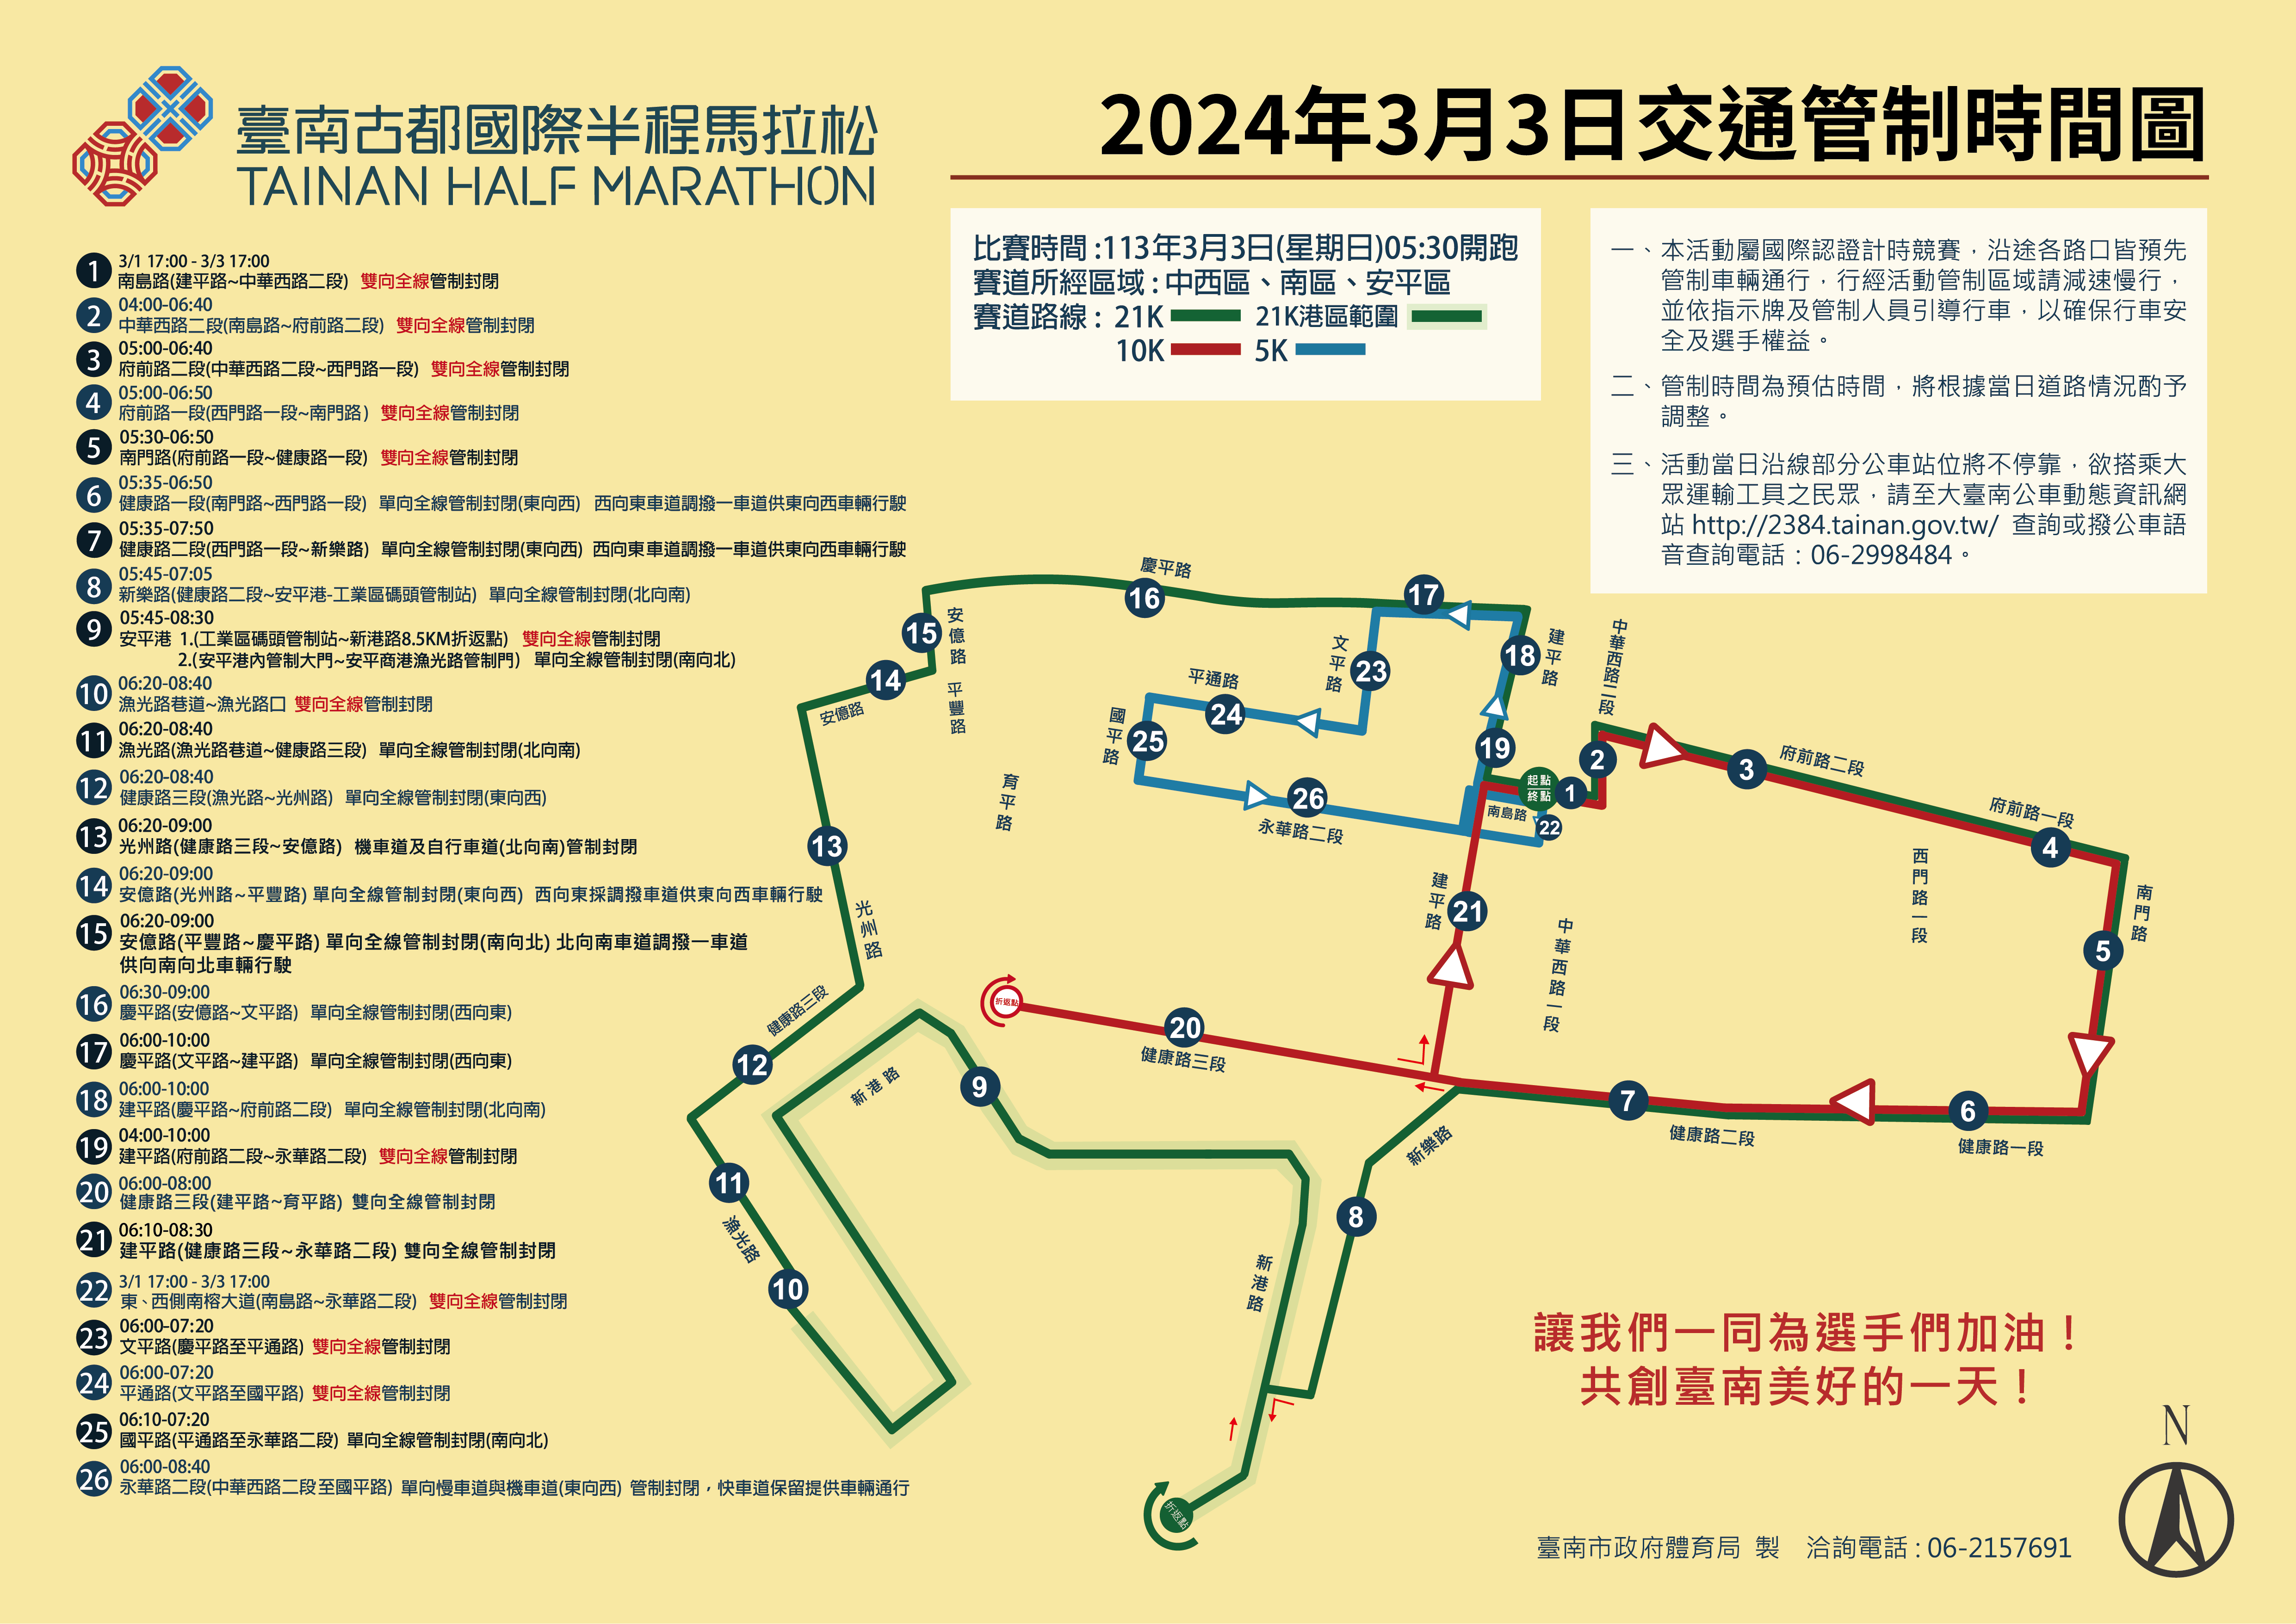 台南古都馬拉松開跑在即  民眾請注意交通管制措施...